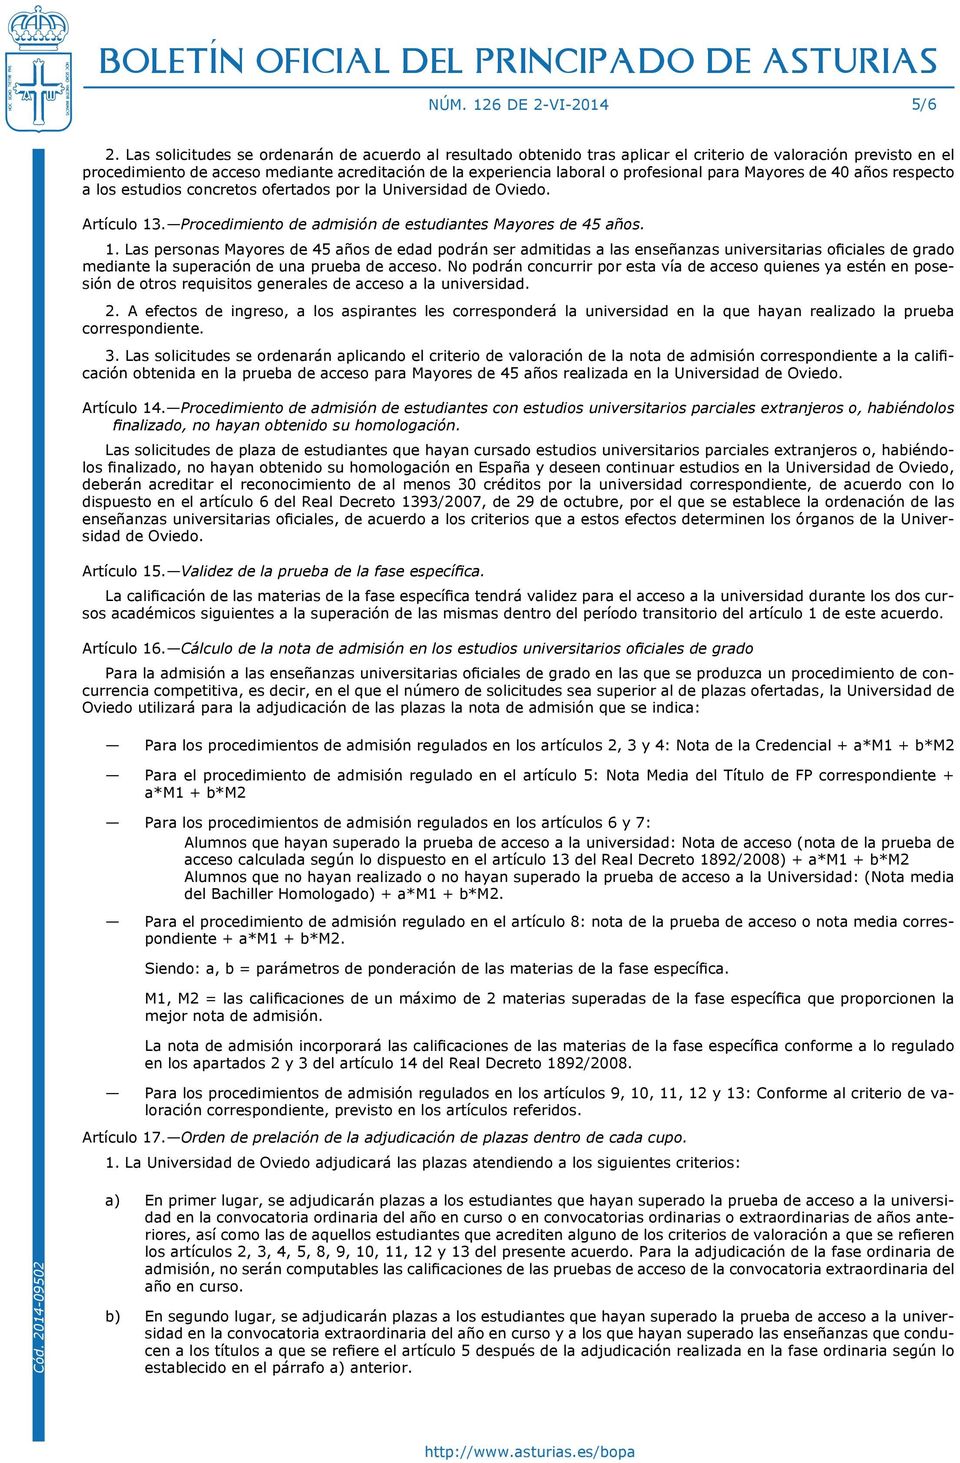 profesional para Mayores de 40 años respecto a los estudios concretos ofertados por la Universidad de Oviedo. Artículo 13